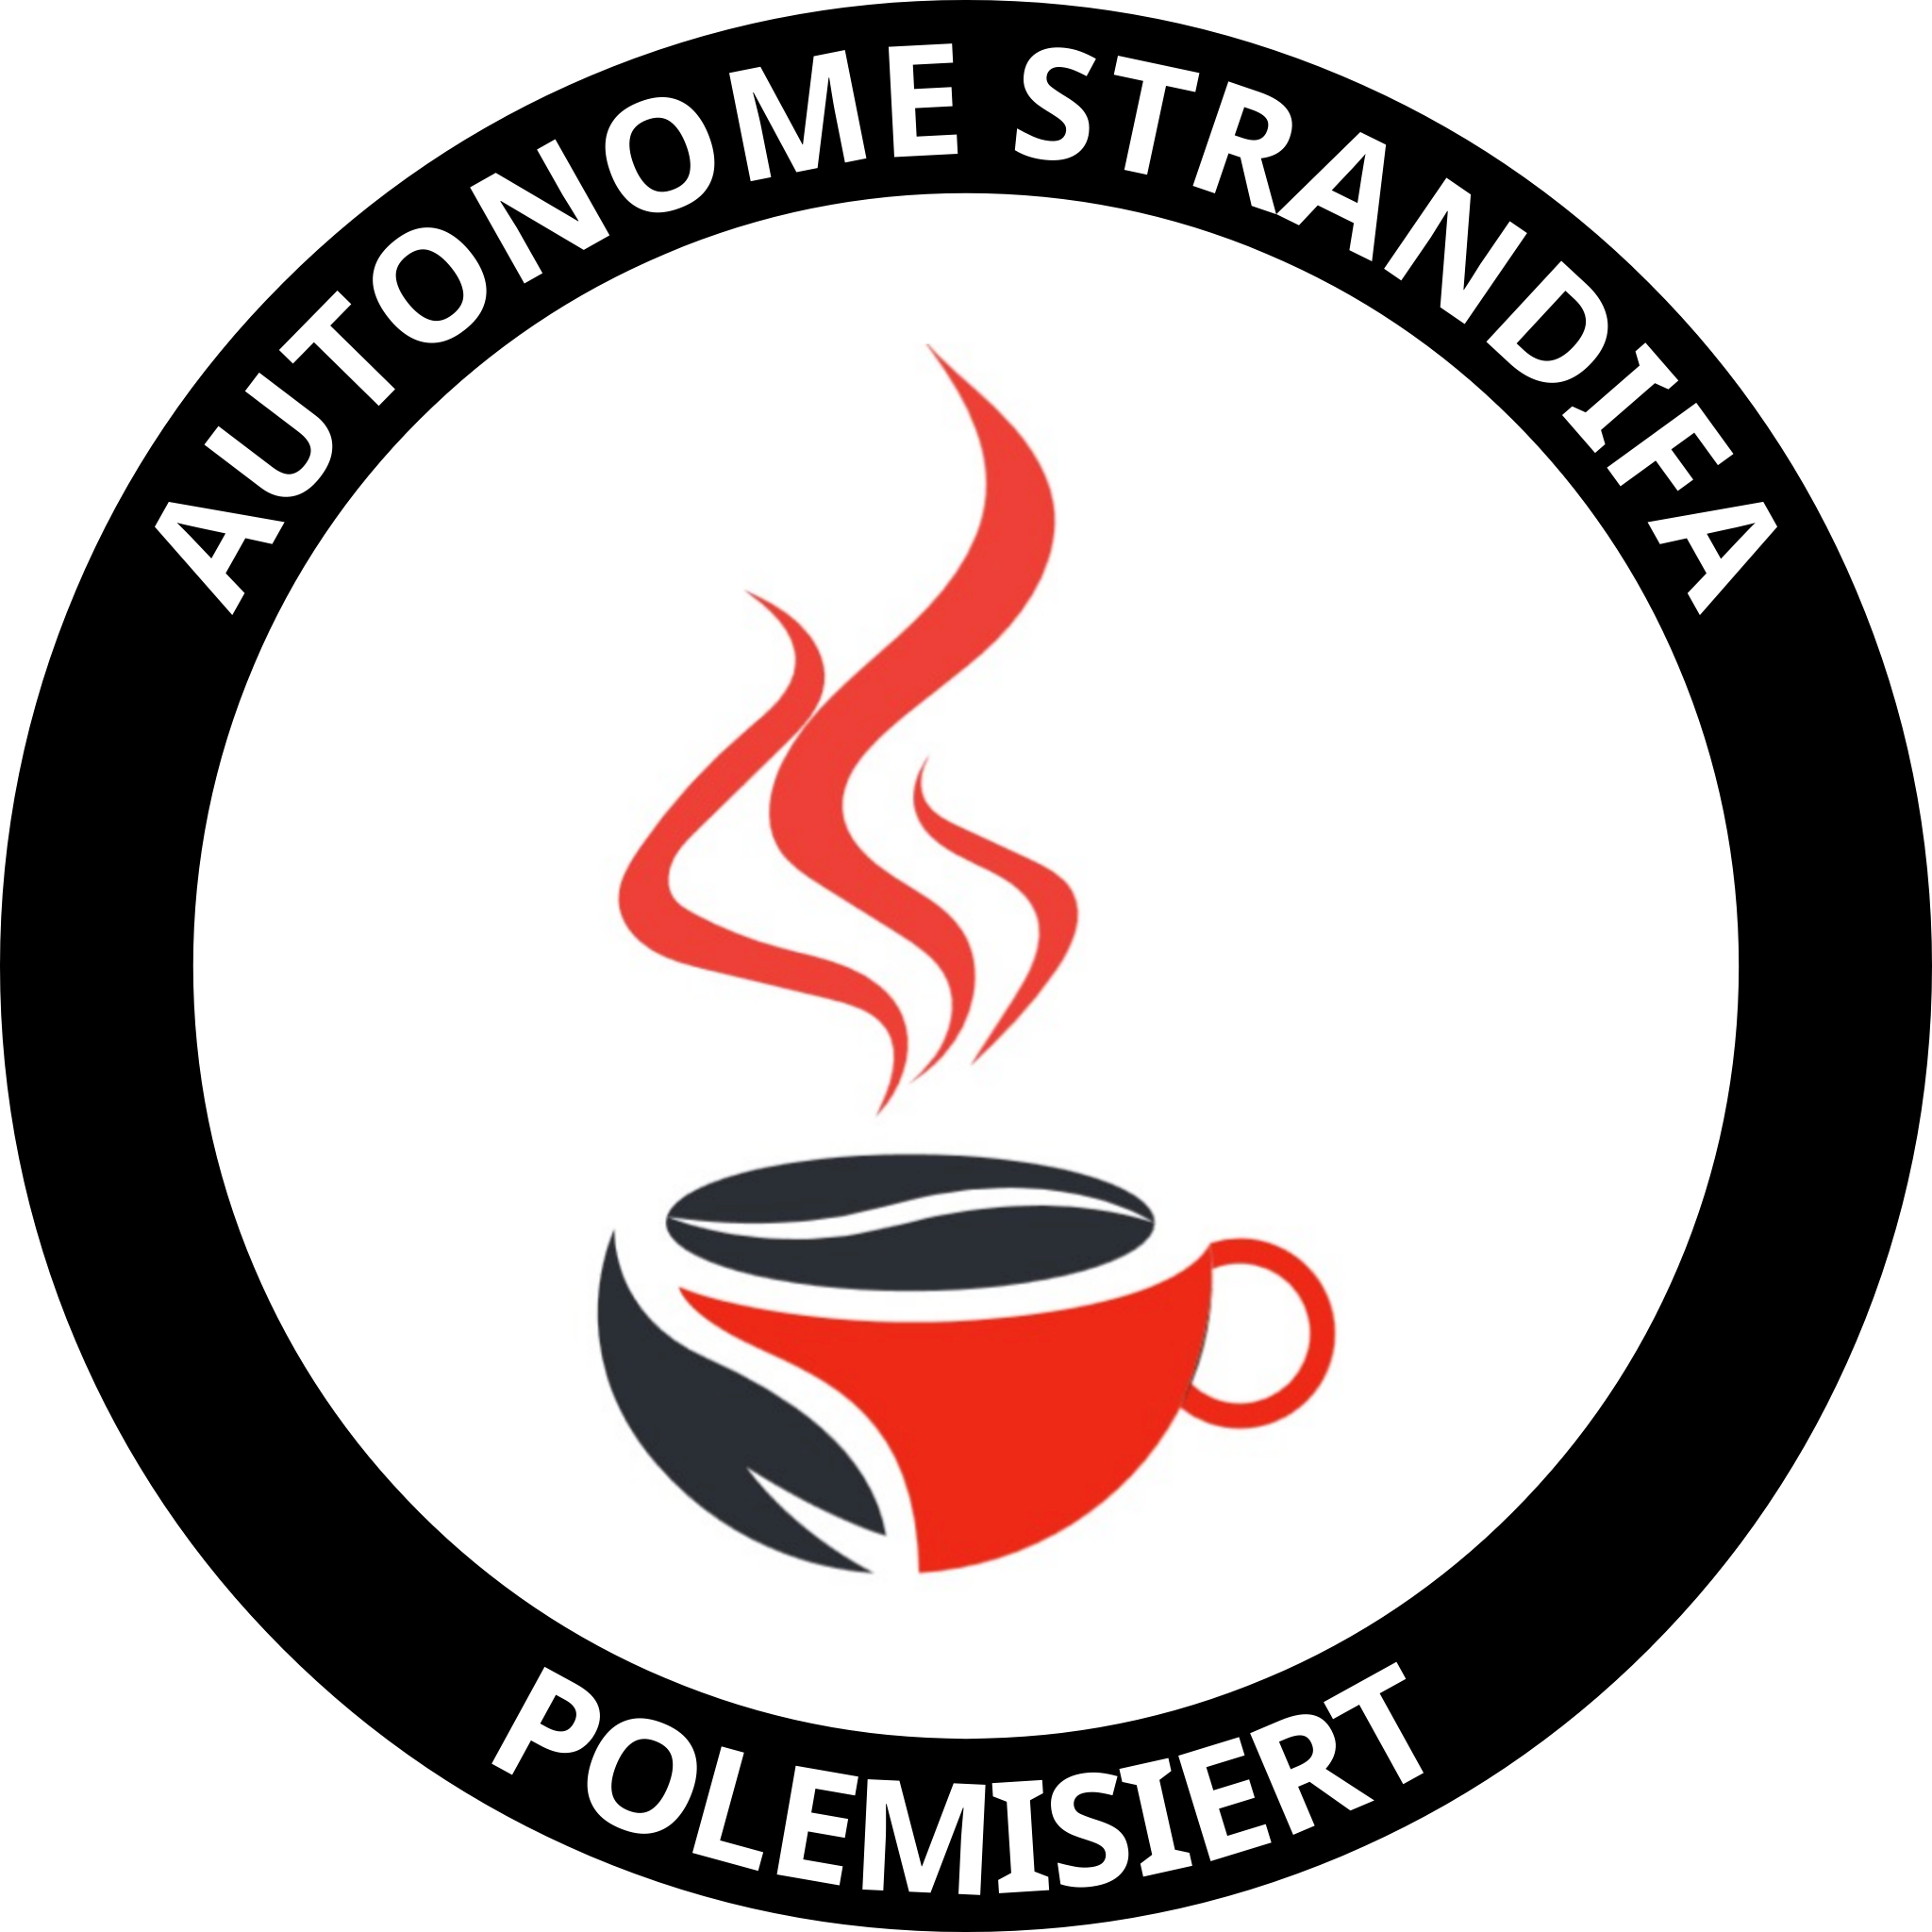 autonome strandifa - polemisiert
Sticker im Antifalook und dem Cafe/Bohnen Logo vom Strandcafe Freiburg